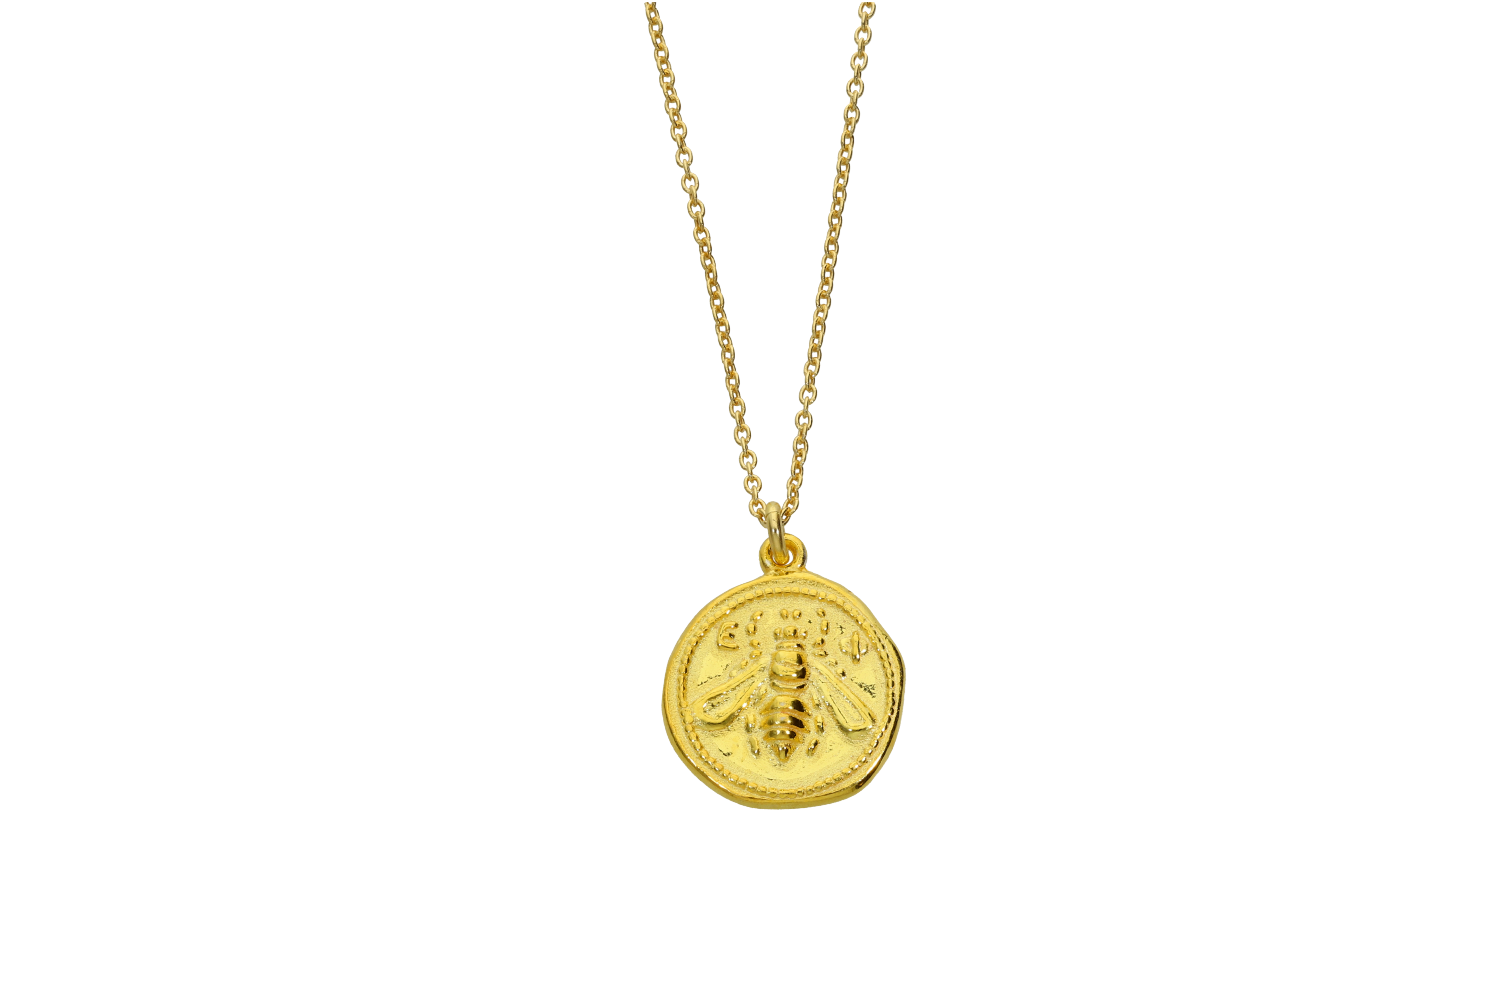 Κολιέ σε ασήμι 925° επίχρυσο με Αρχαίο νόμισμα πού απεικονίζει την Μέλισσα από την Κρήτη